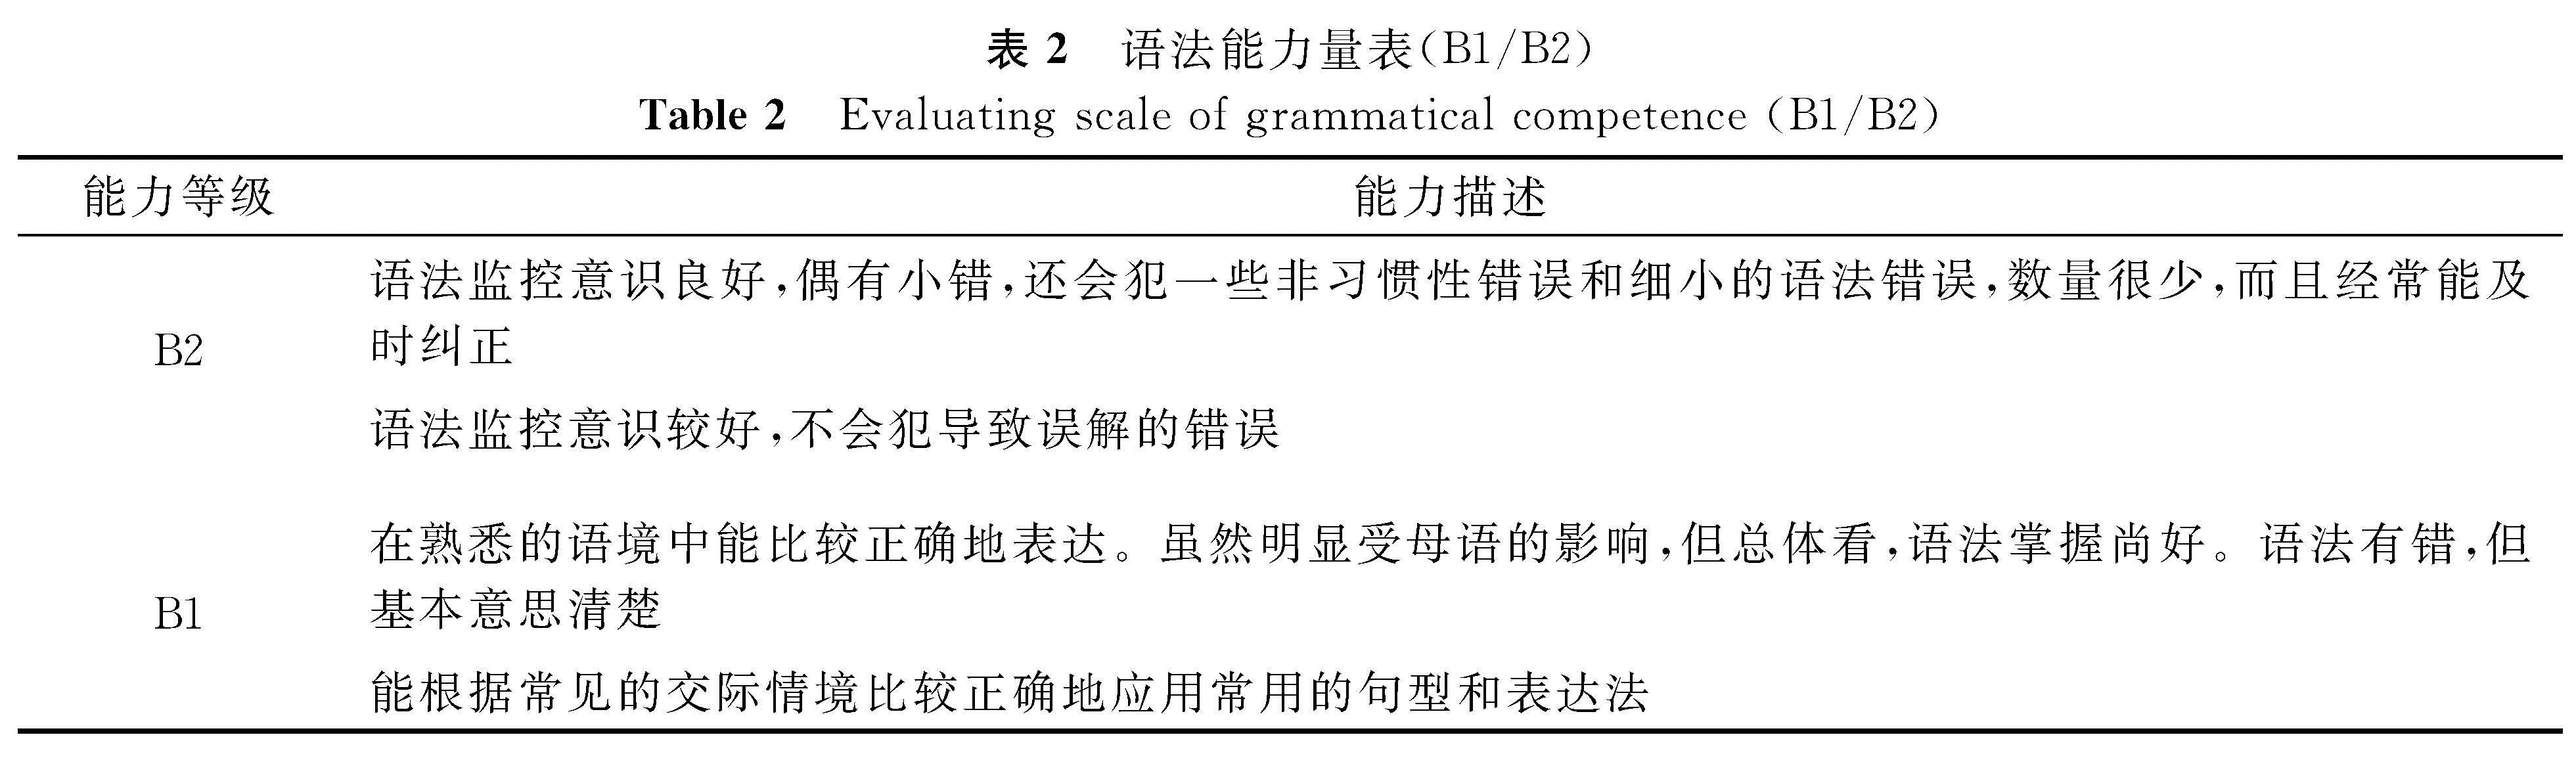 表2 语法能力量表(B1/B2)<br/>Table 2 Evaluating scale of grammatical competence(B1/B2)